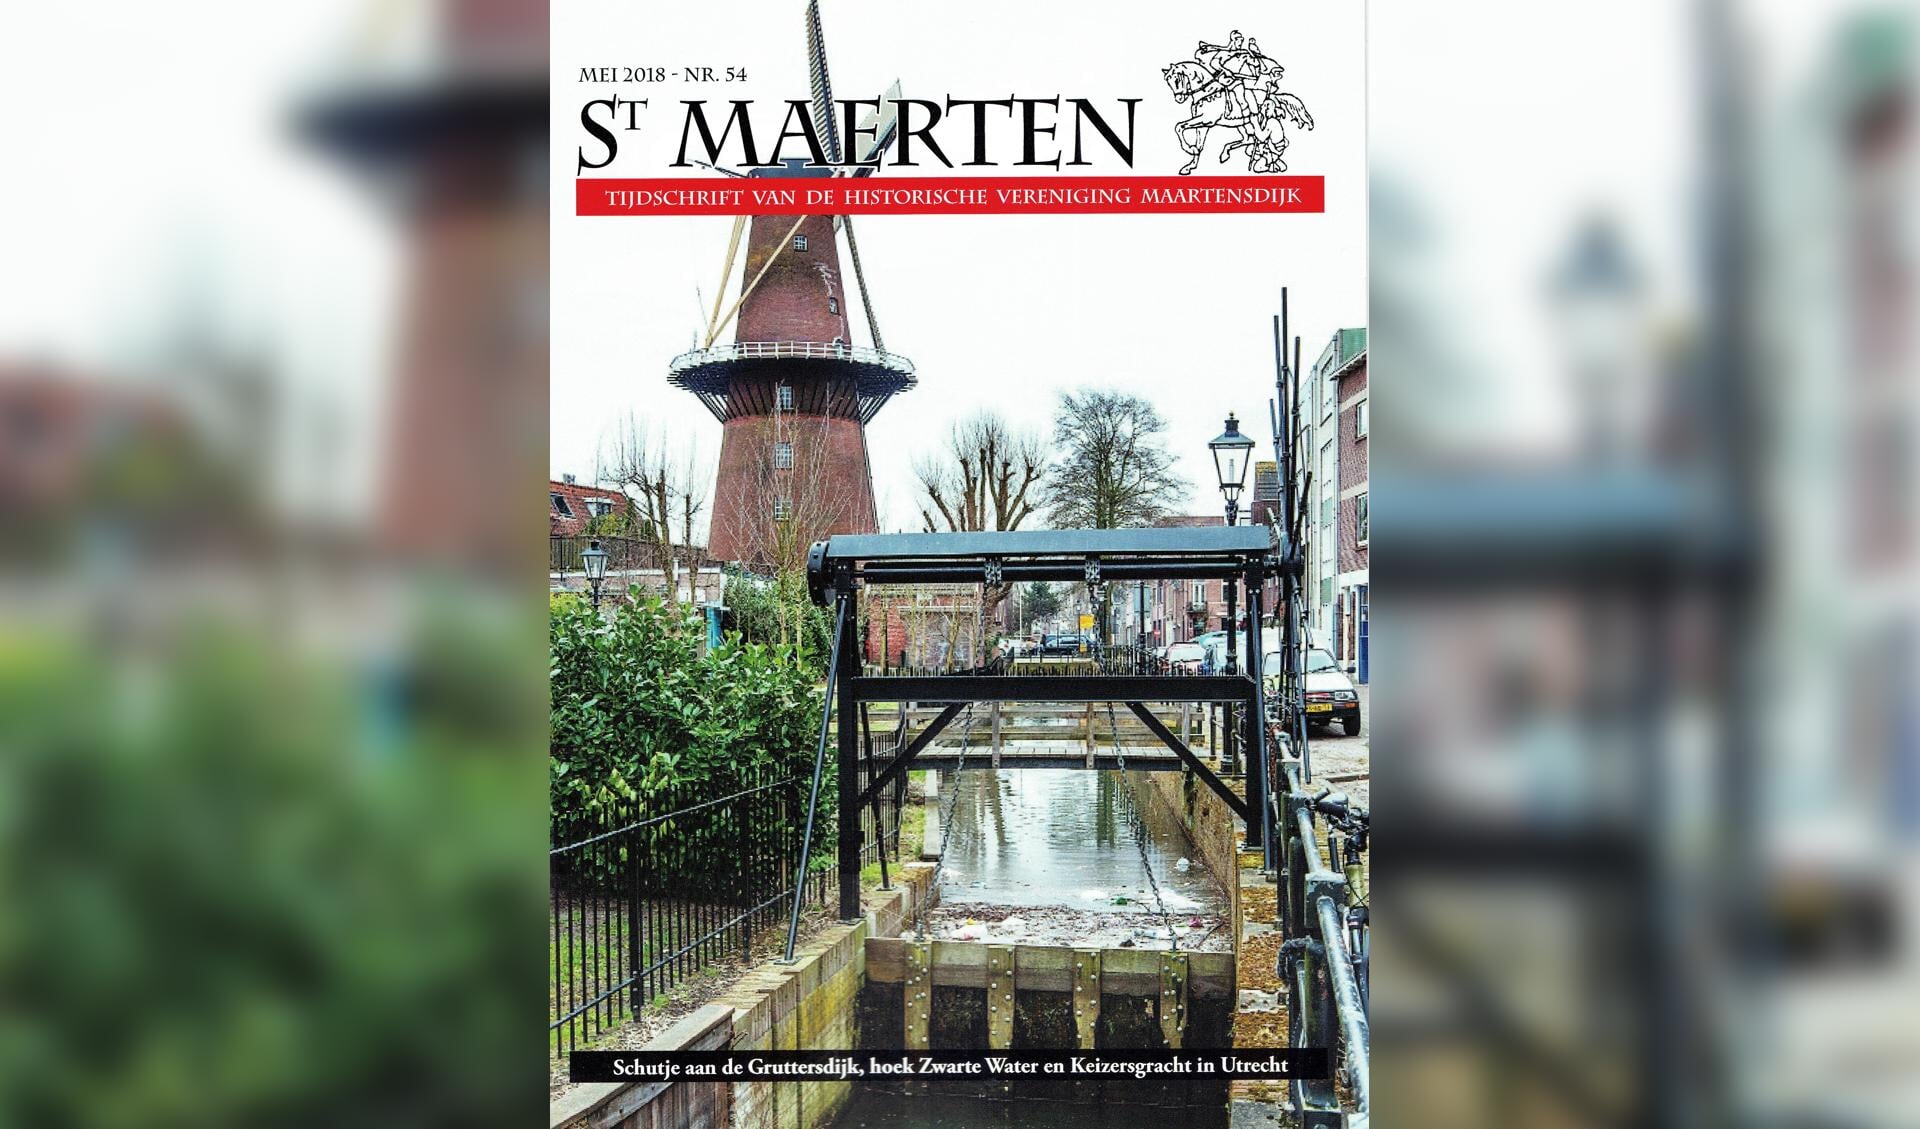 De omslagfoto van de nieuwe Sint Maerten geeft een impressie van één van de Maartensdijkse schutjes, die door de loop van de geschiedenis inmiddels is gelegen op het grondgebied van de stad Utrecht.